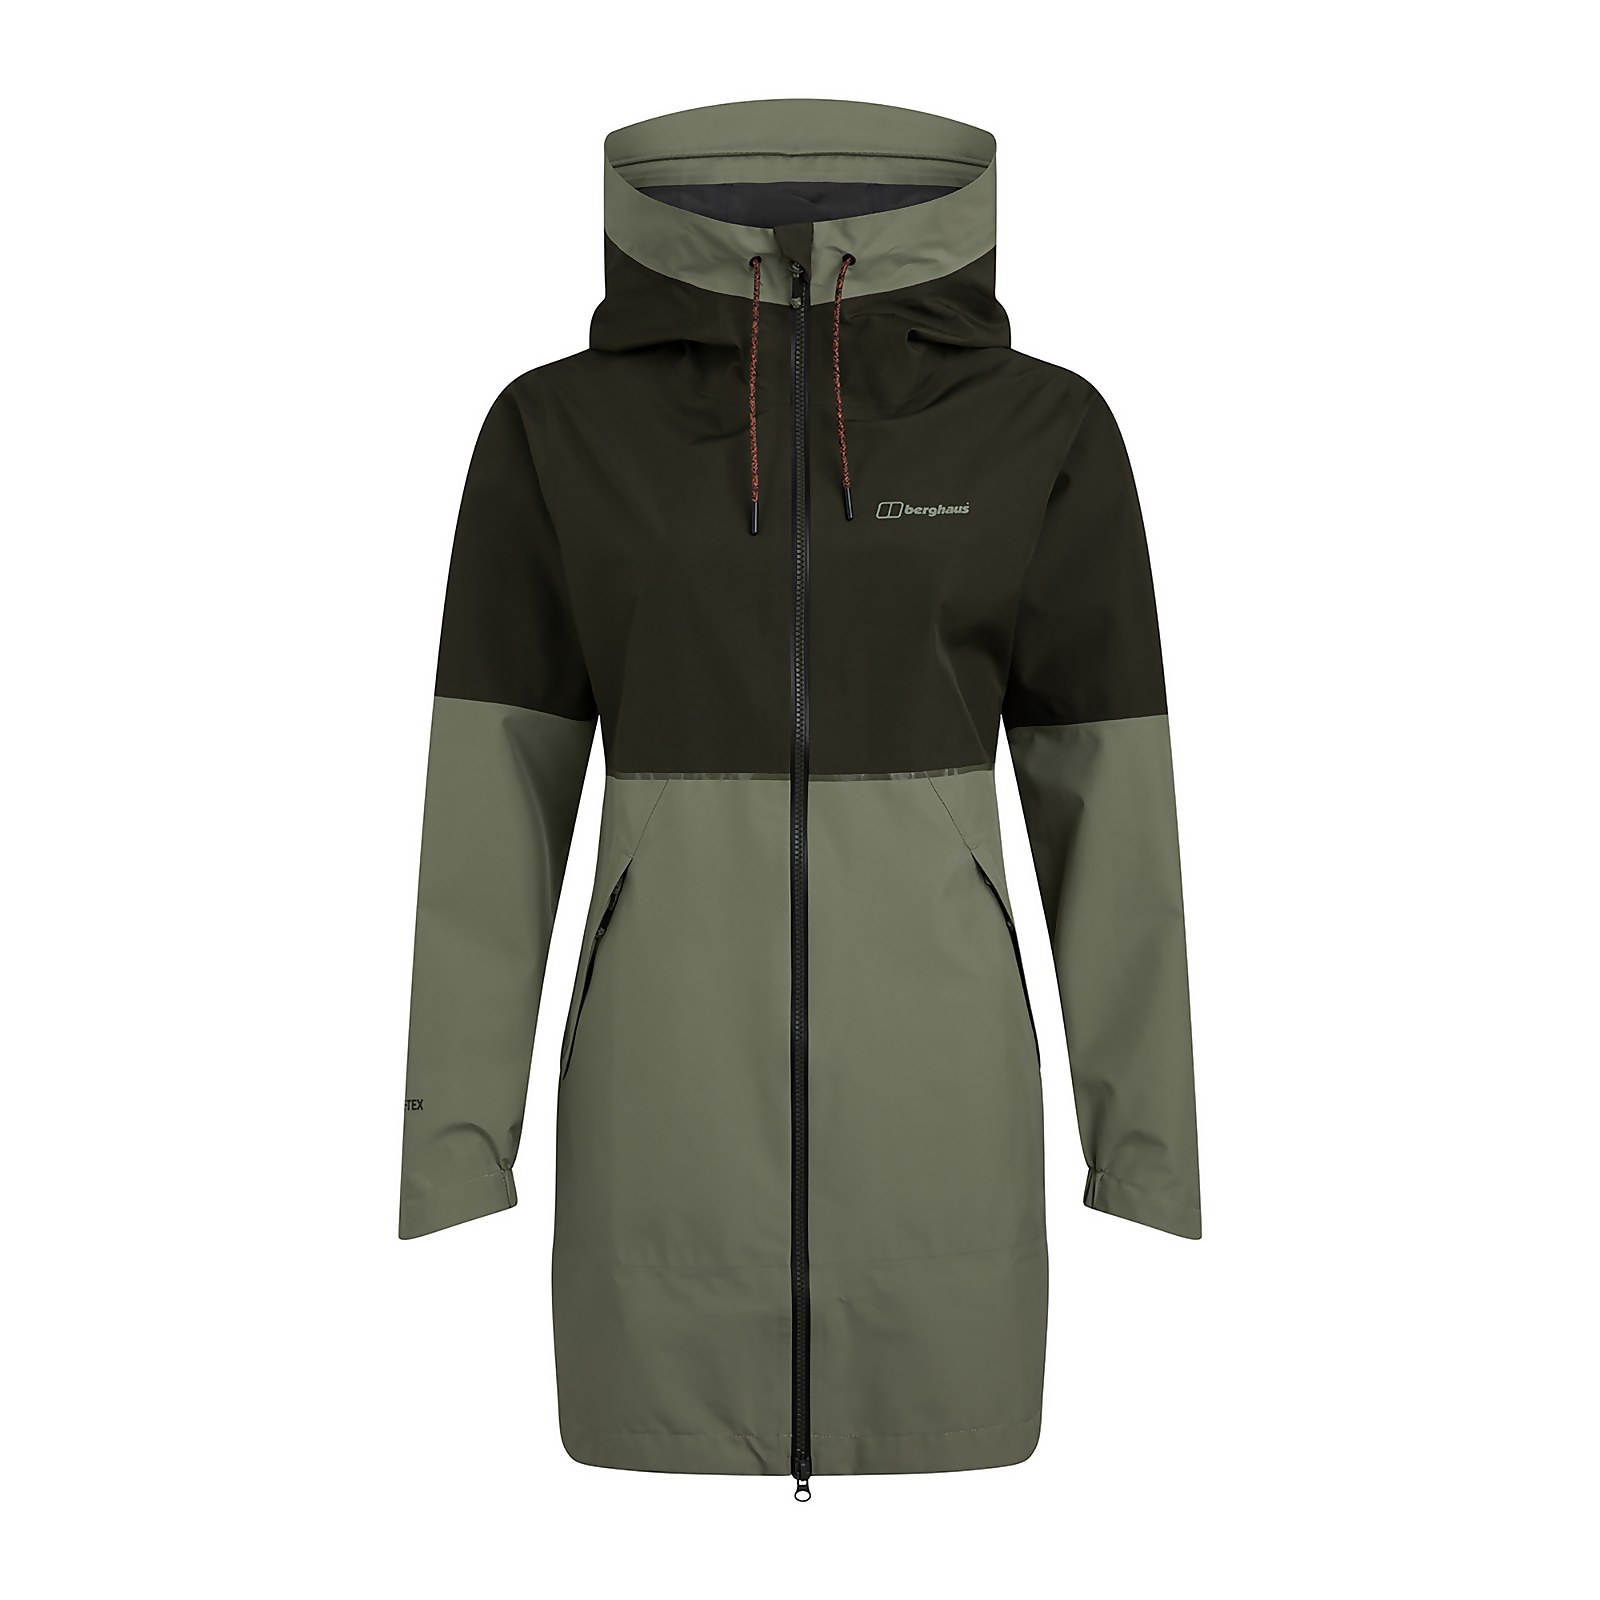 Berghaus Womens Rothley Waterproof Jacket - Green - 20